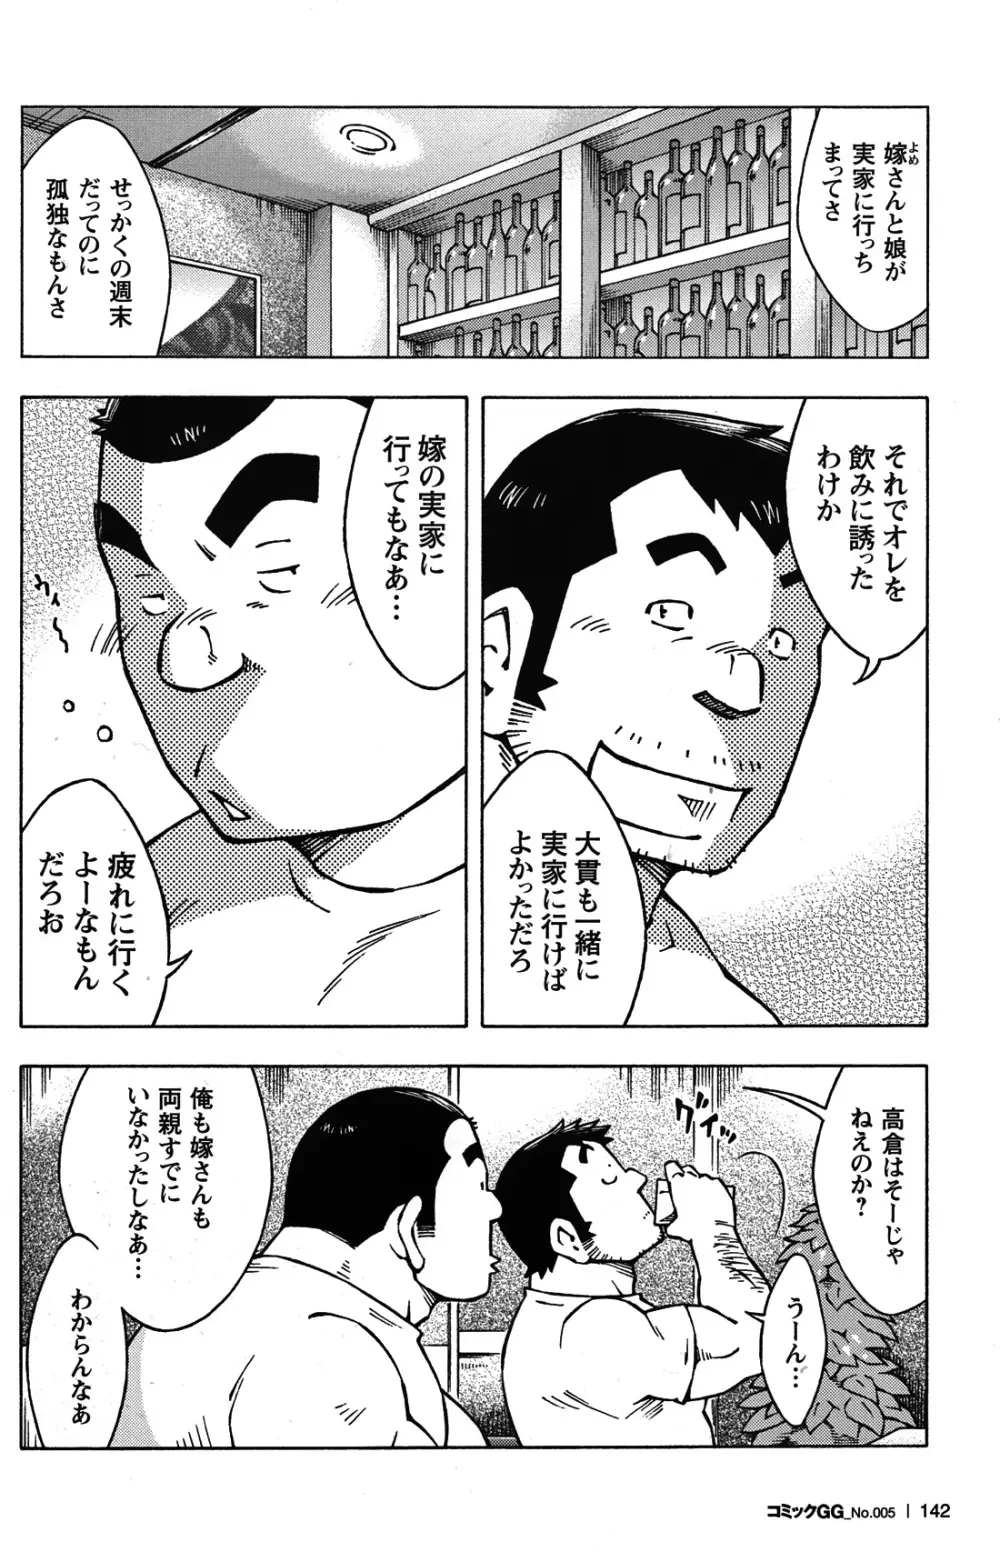 Comic G-men Gaho No.05 130ページ